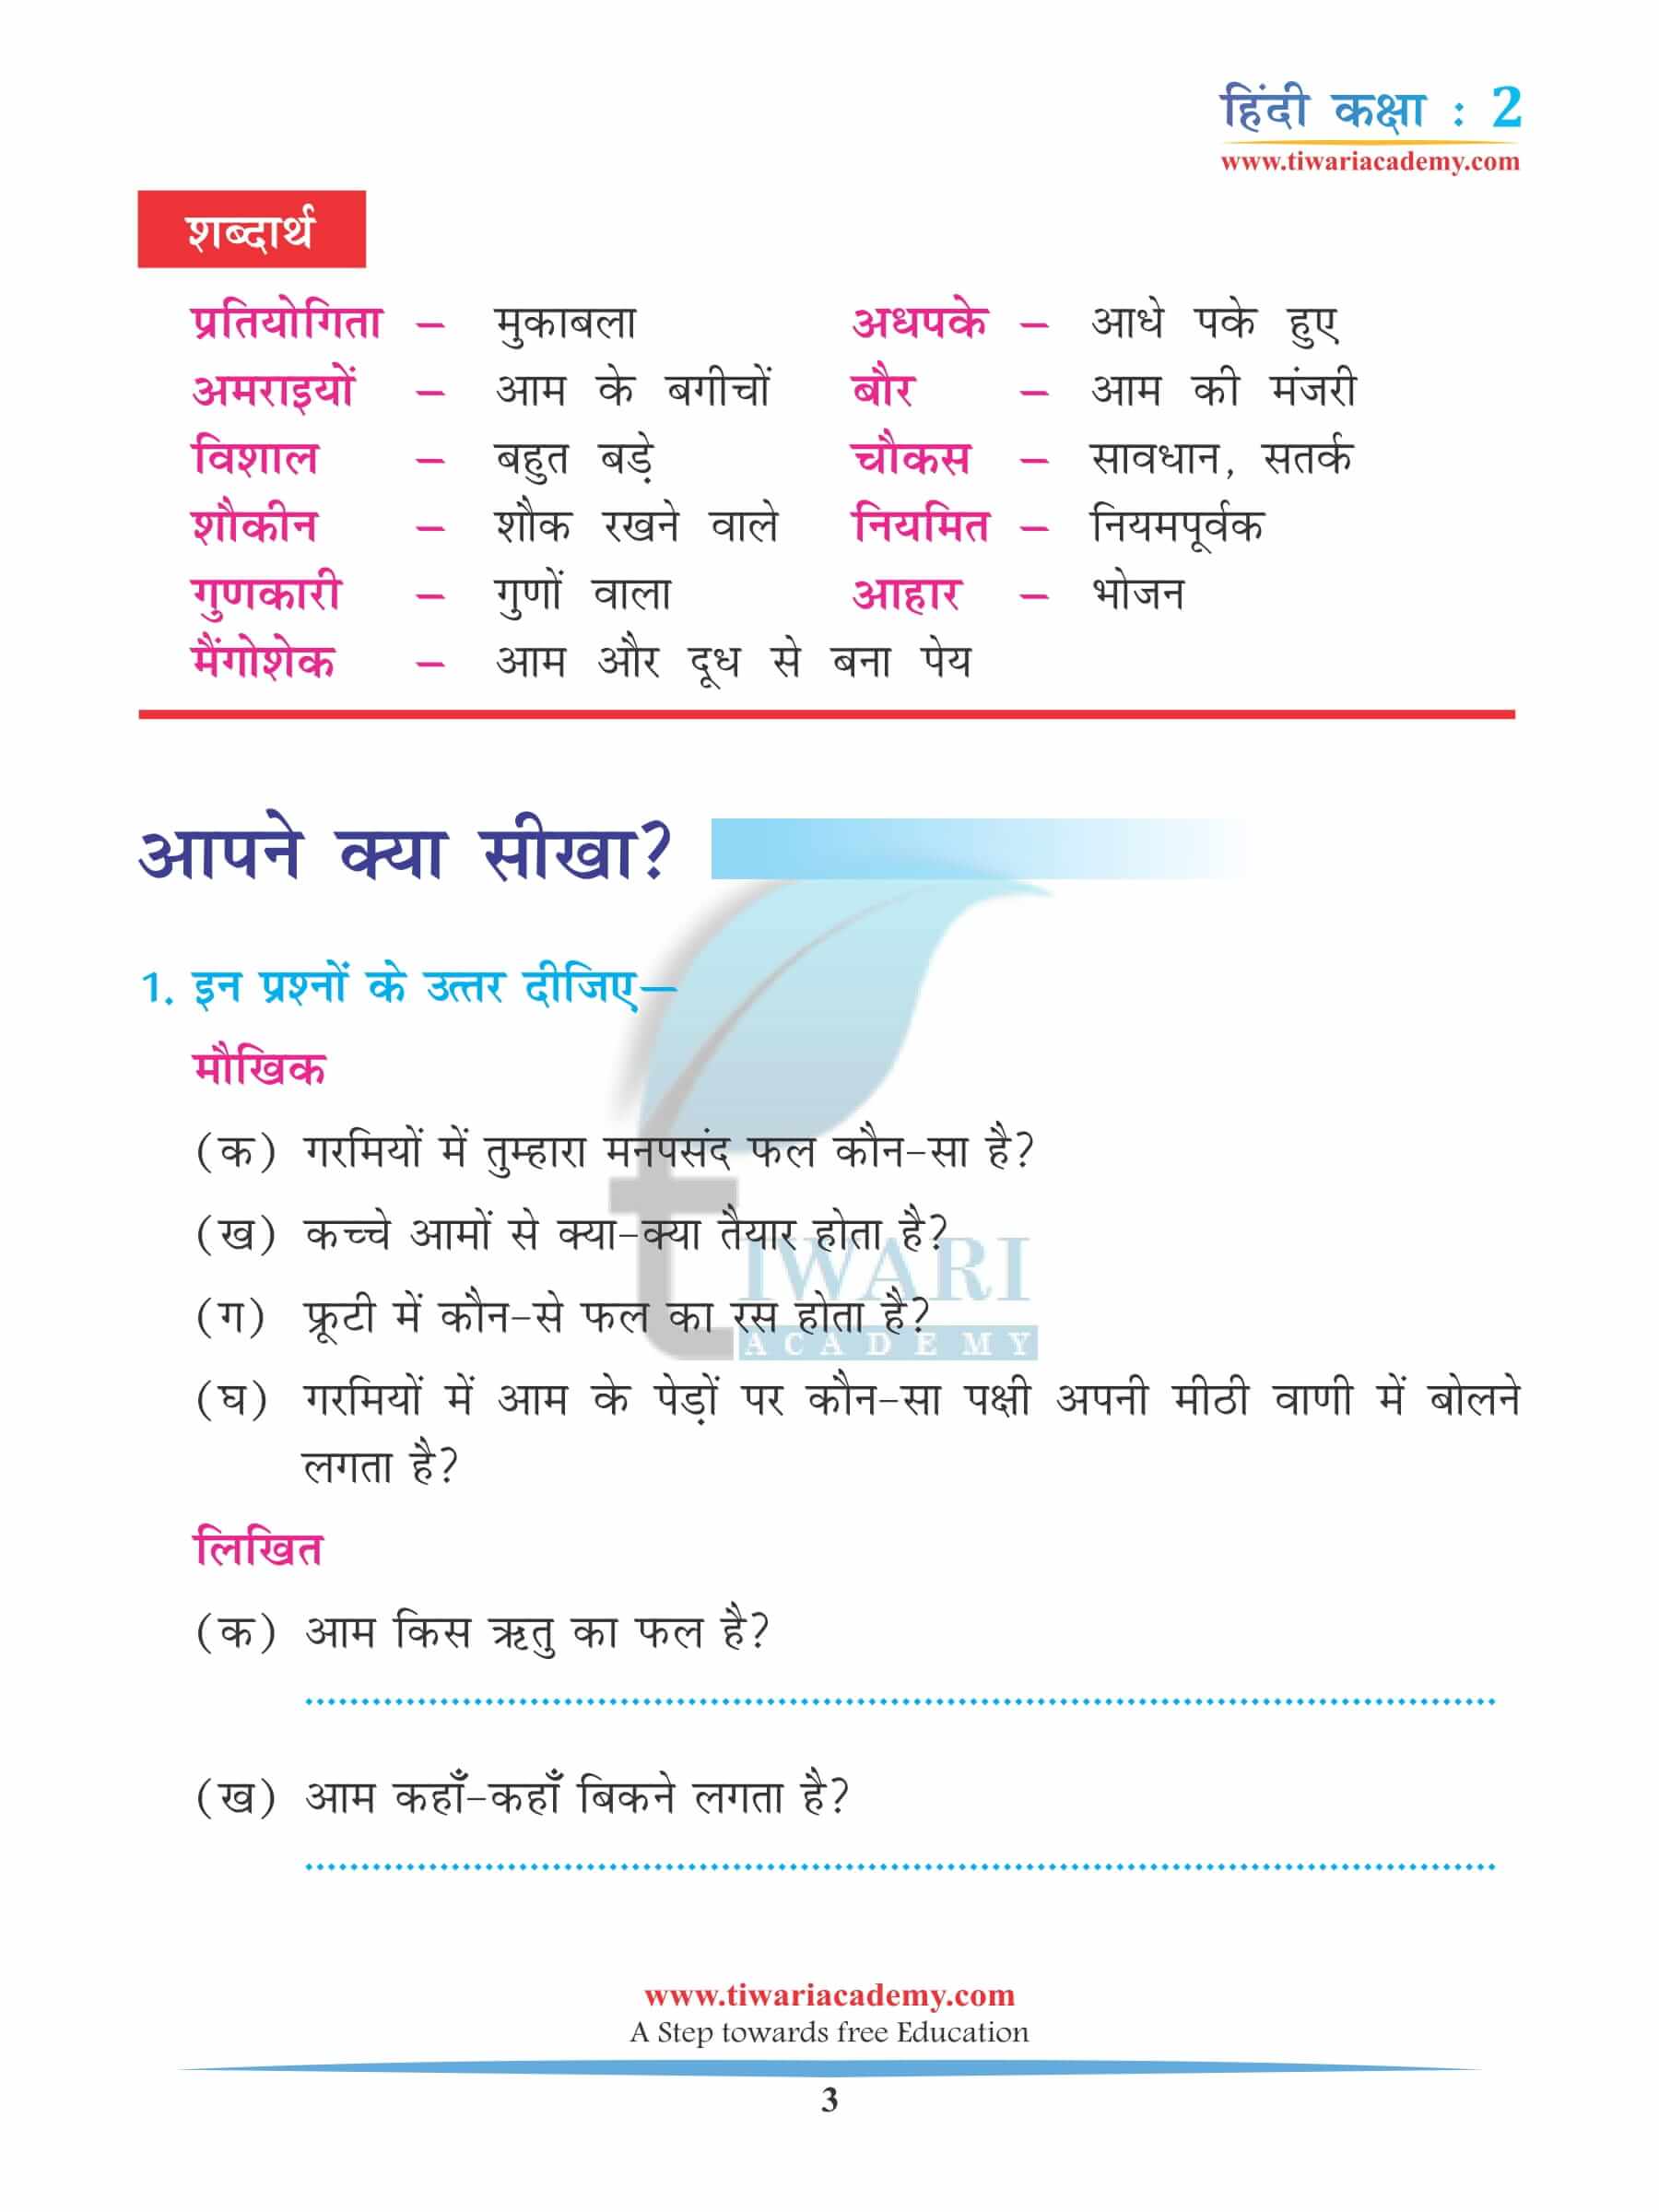 कक्षा 2 हिंदी अध्याय 14 अभ्यास के लिए किताब